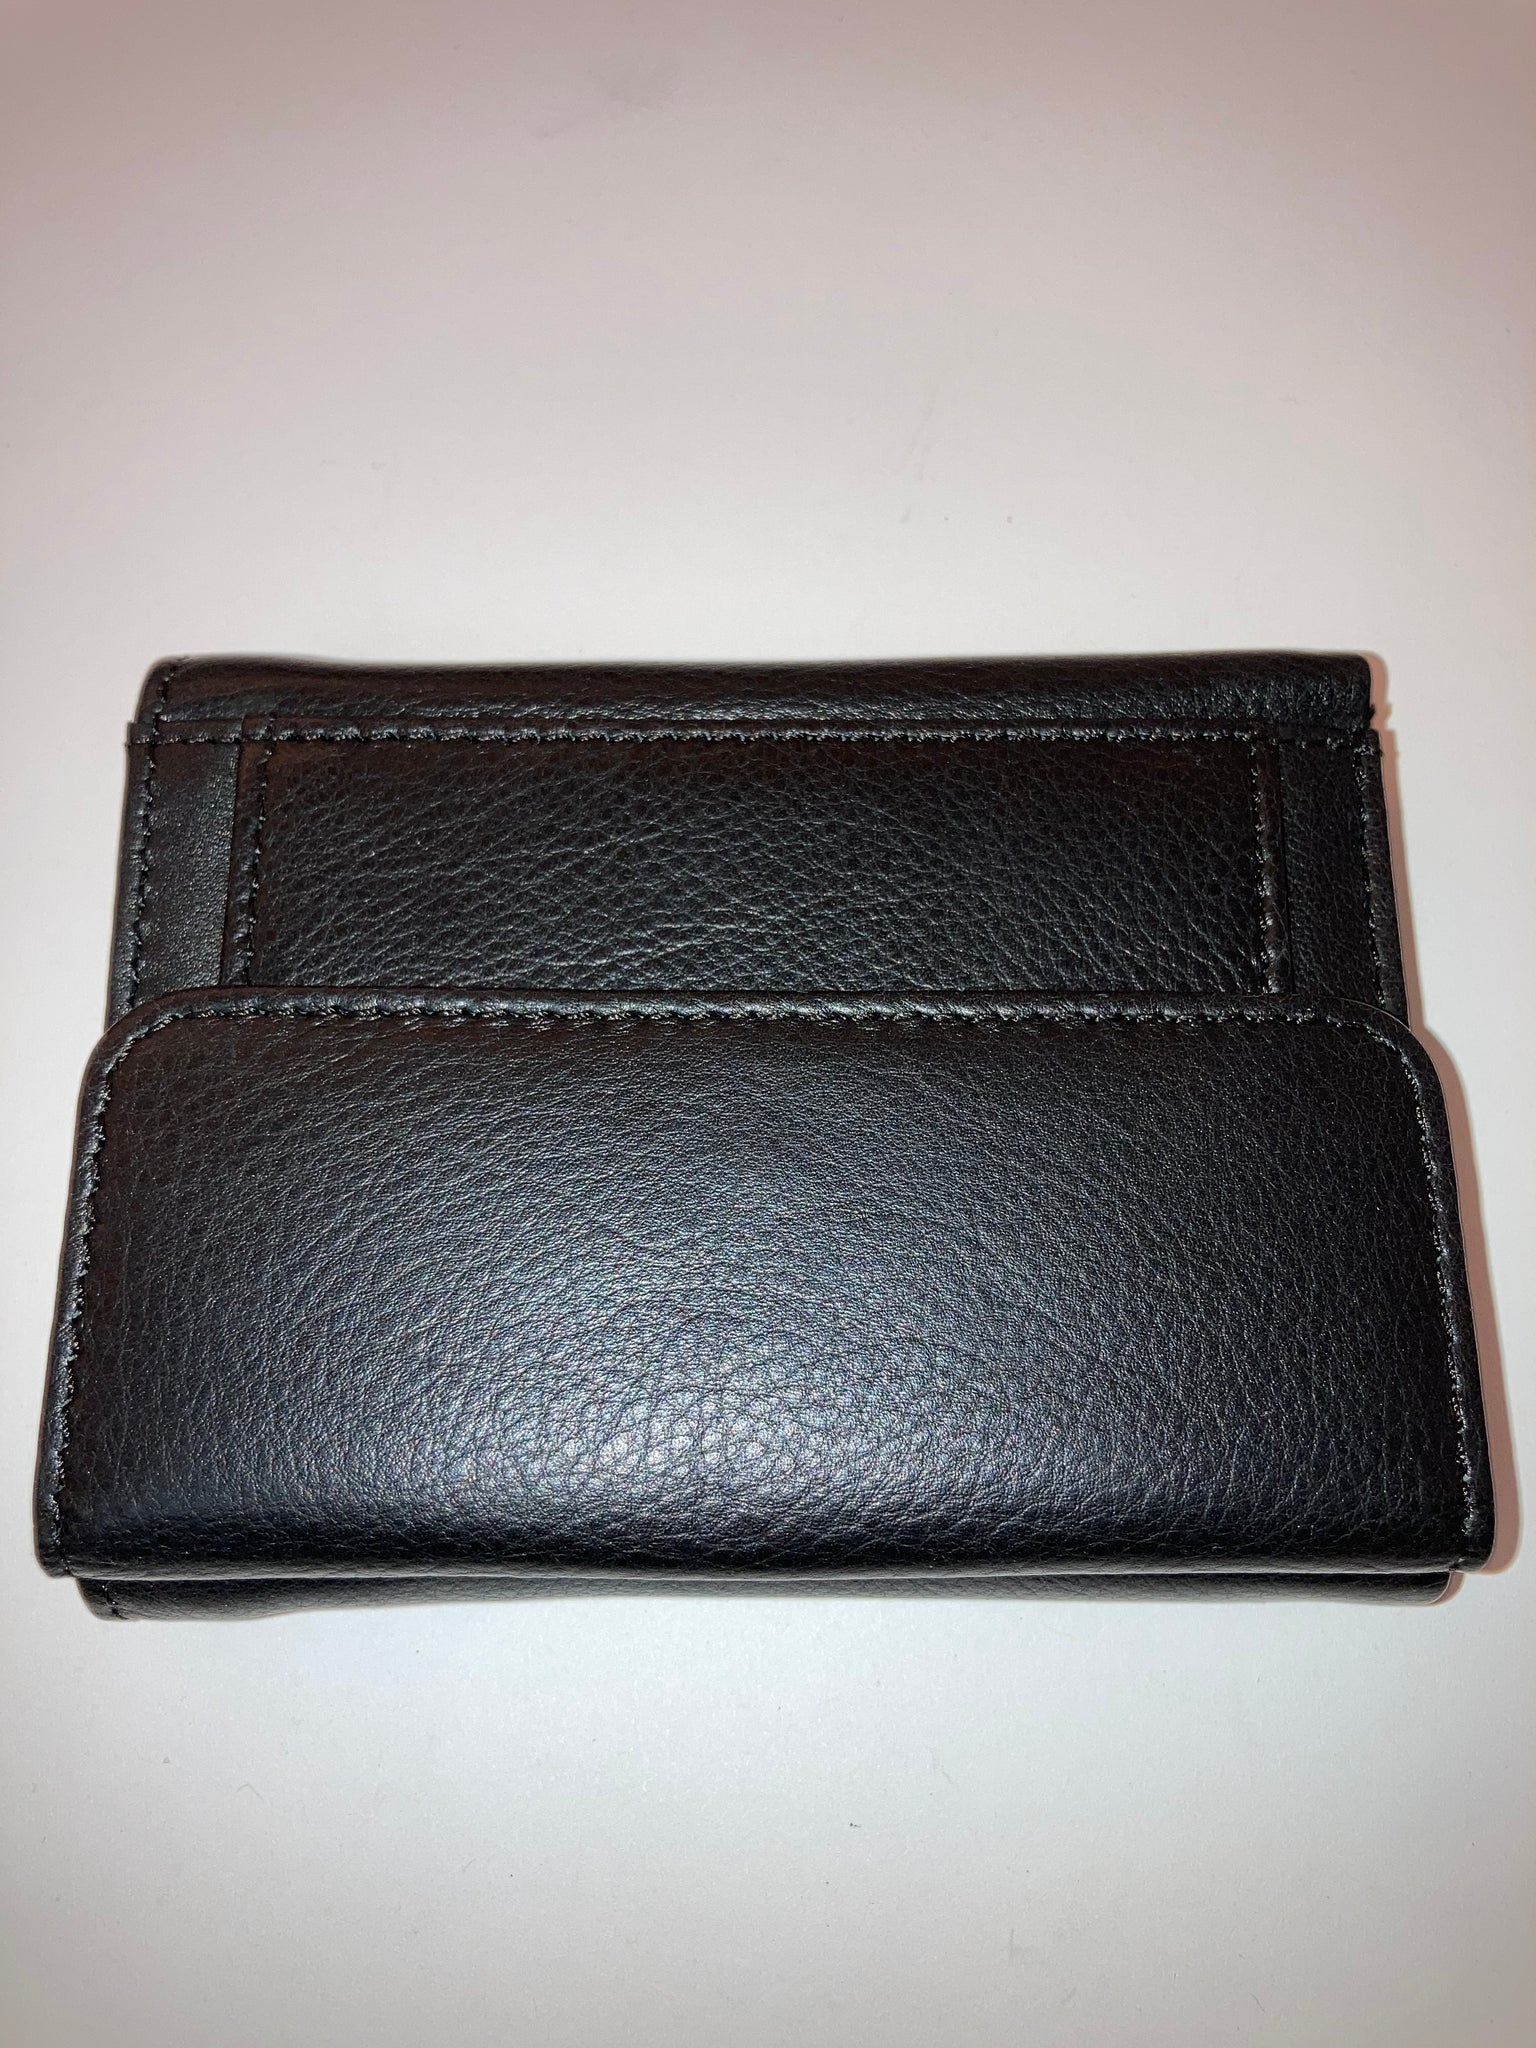 Ladies Premium Leather hand bag 99510 – SREELEATHERS